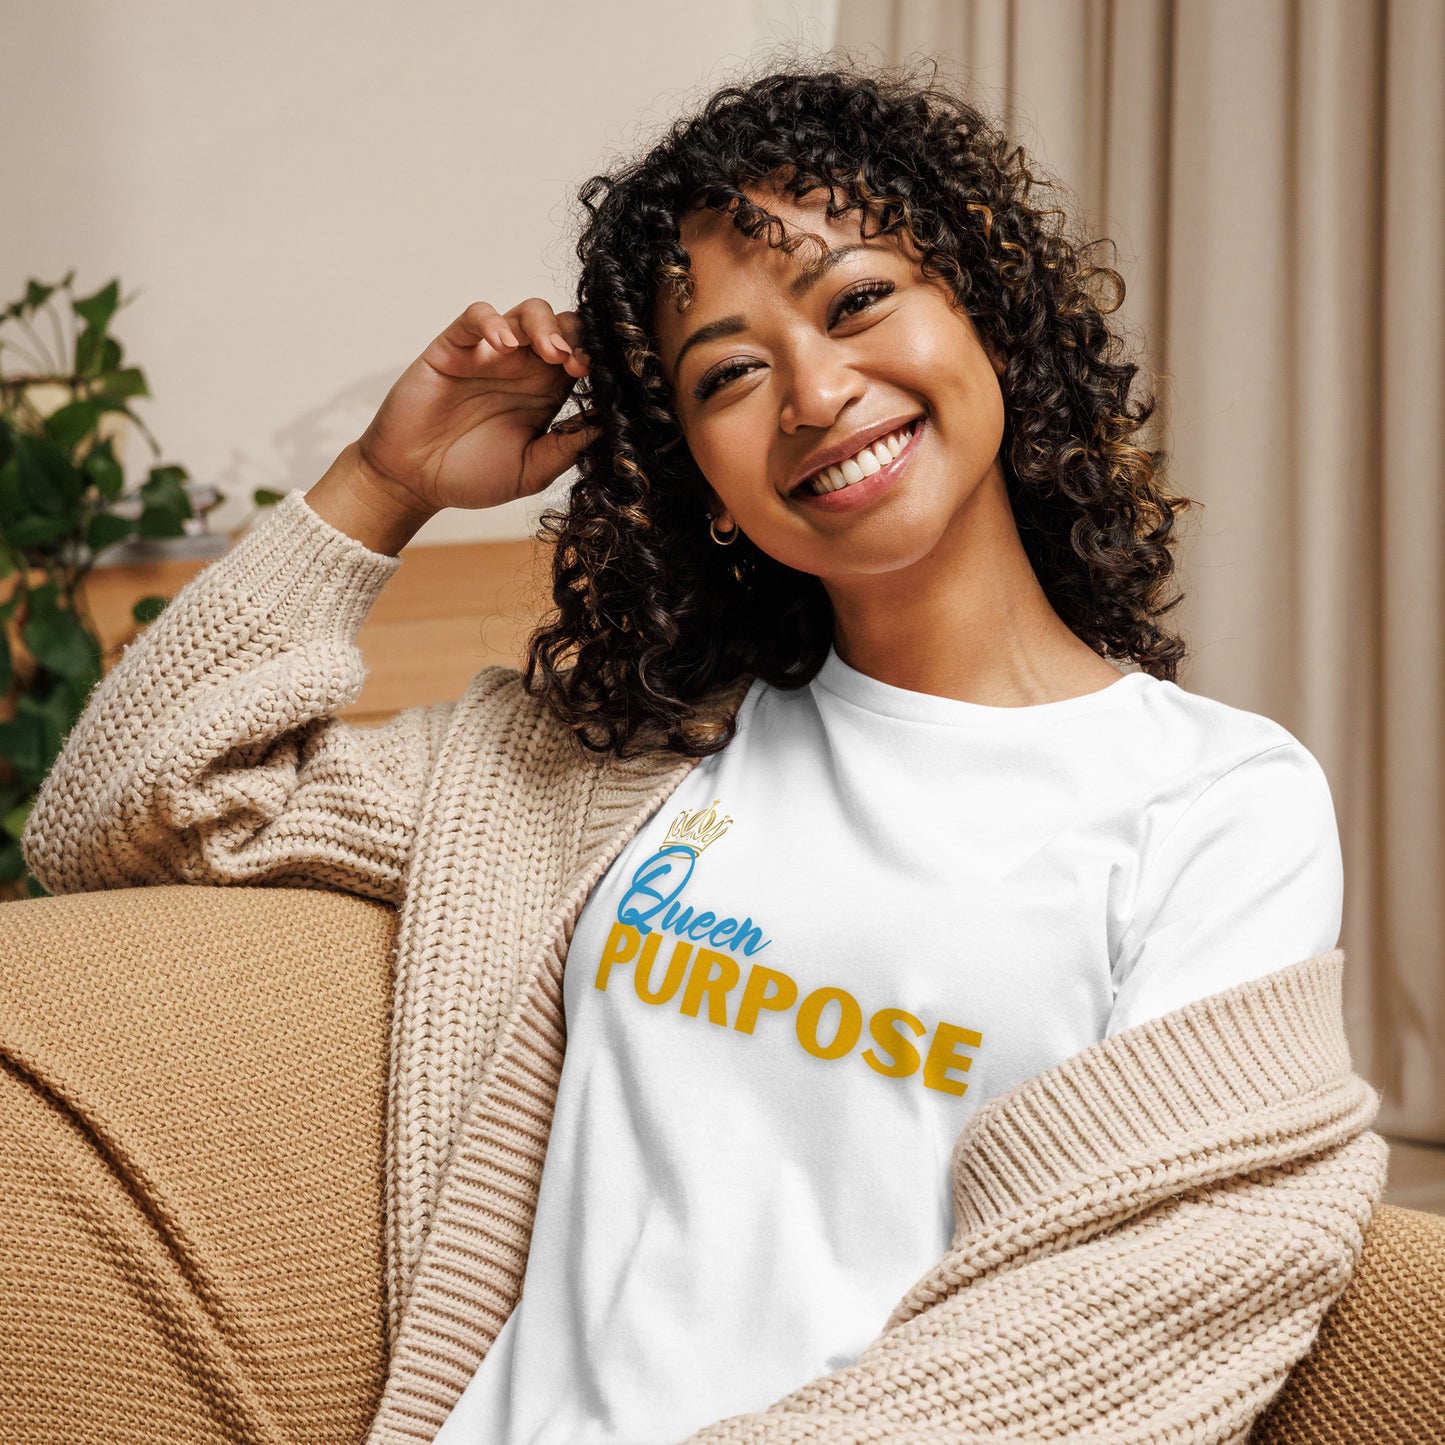 Queen Purpose Women's Relaxed T-Shirt